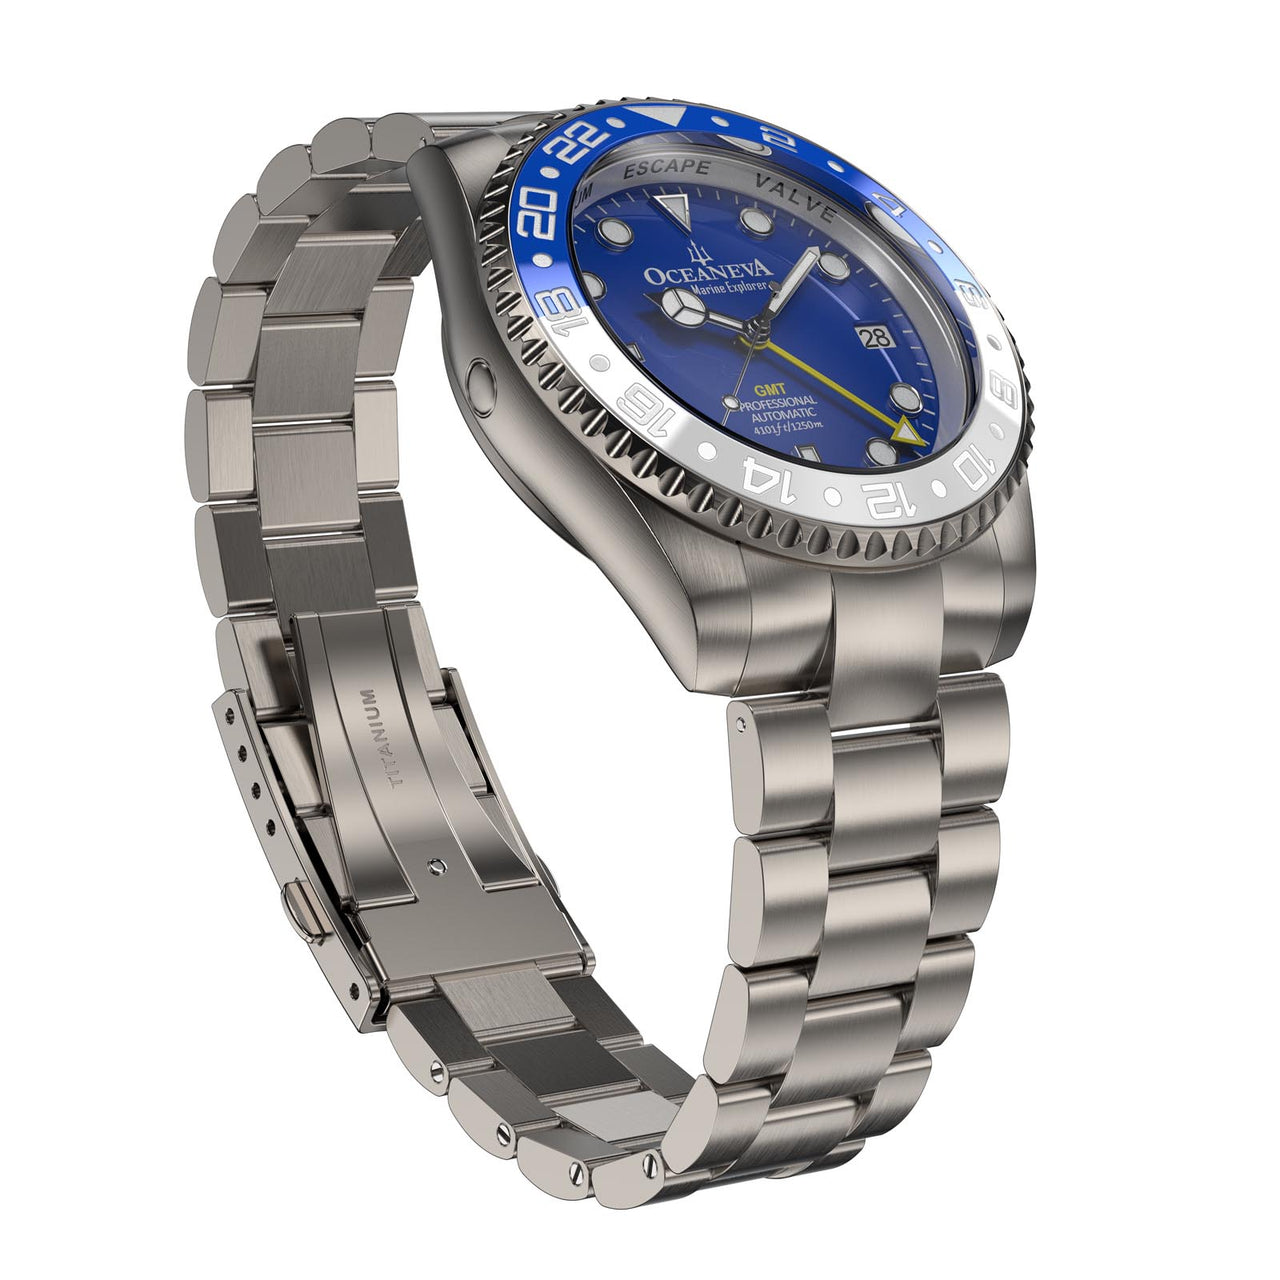 Close-up of Oceaneva Titanium Watch's helium escape valve feature